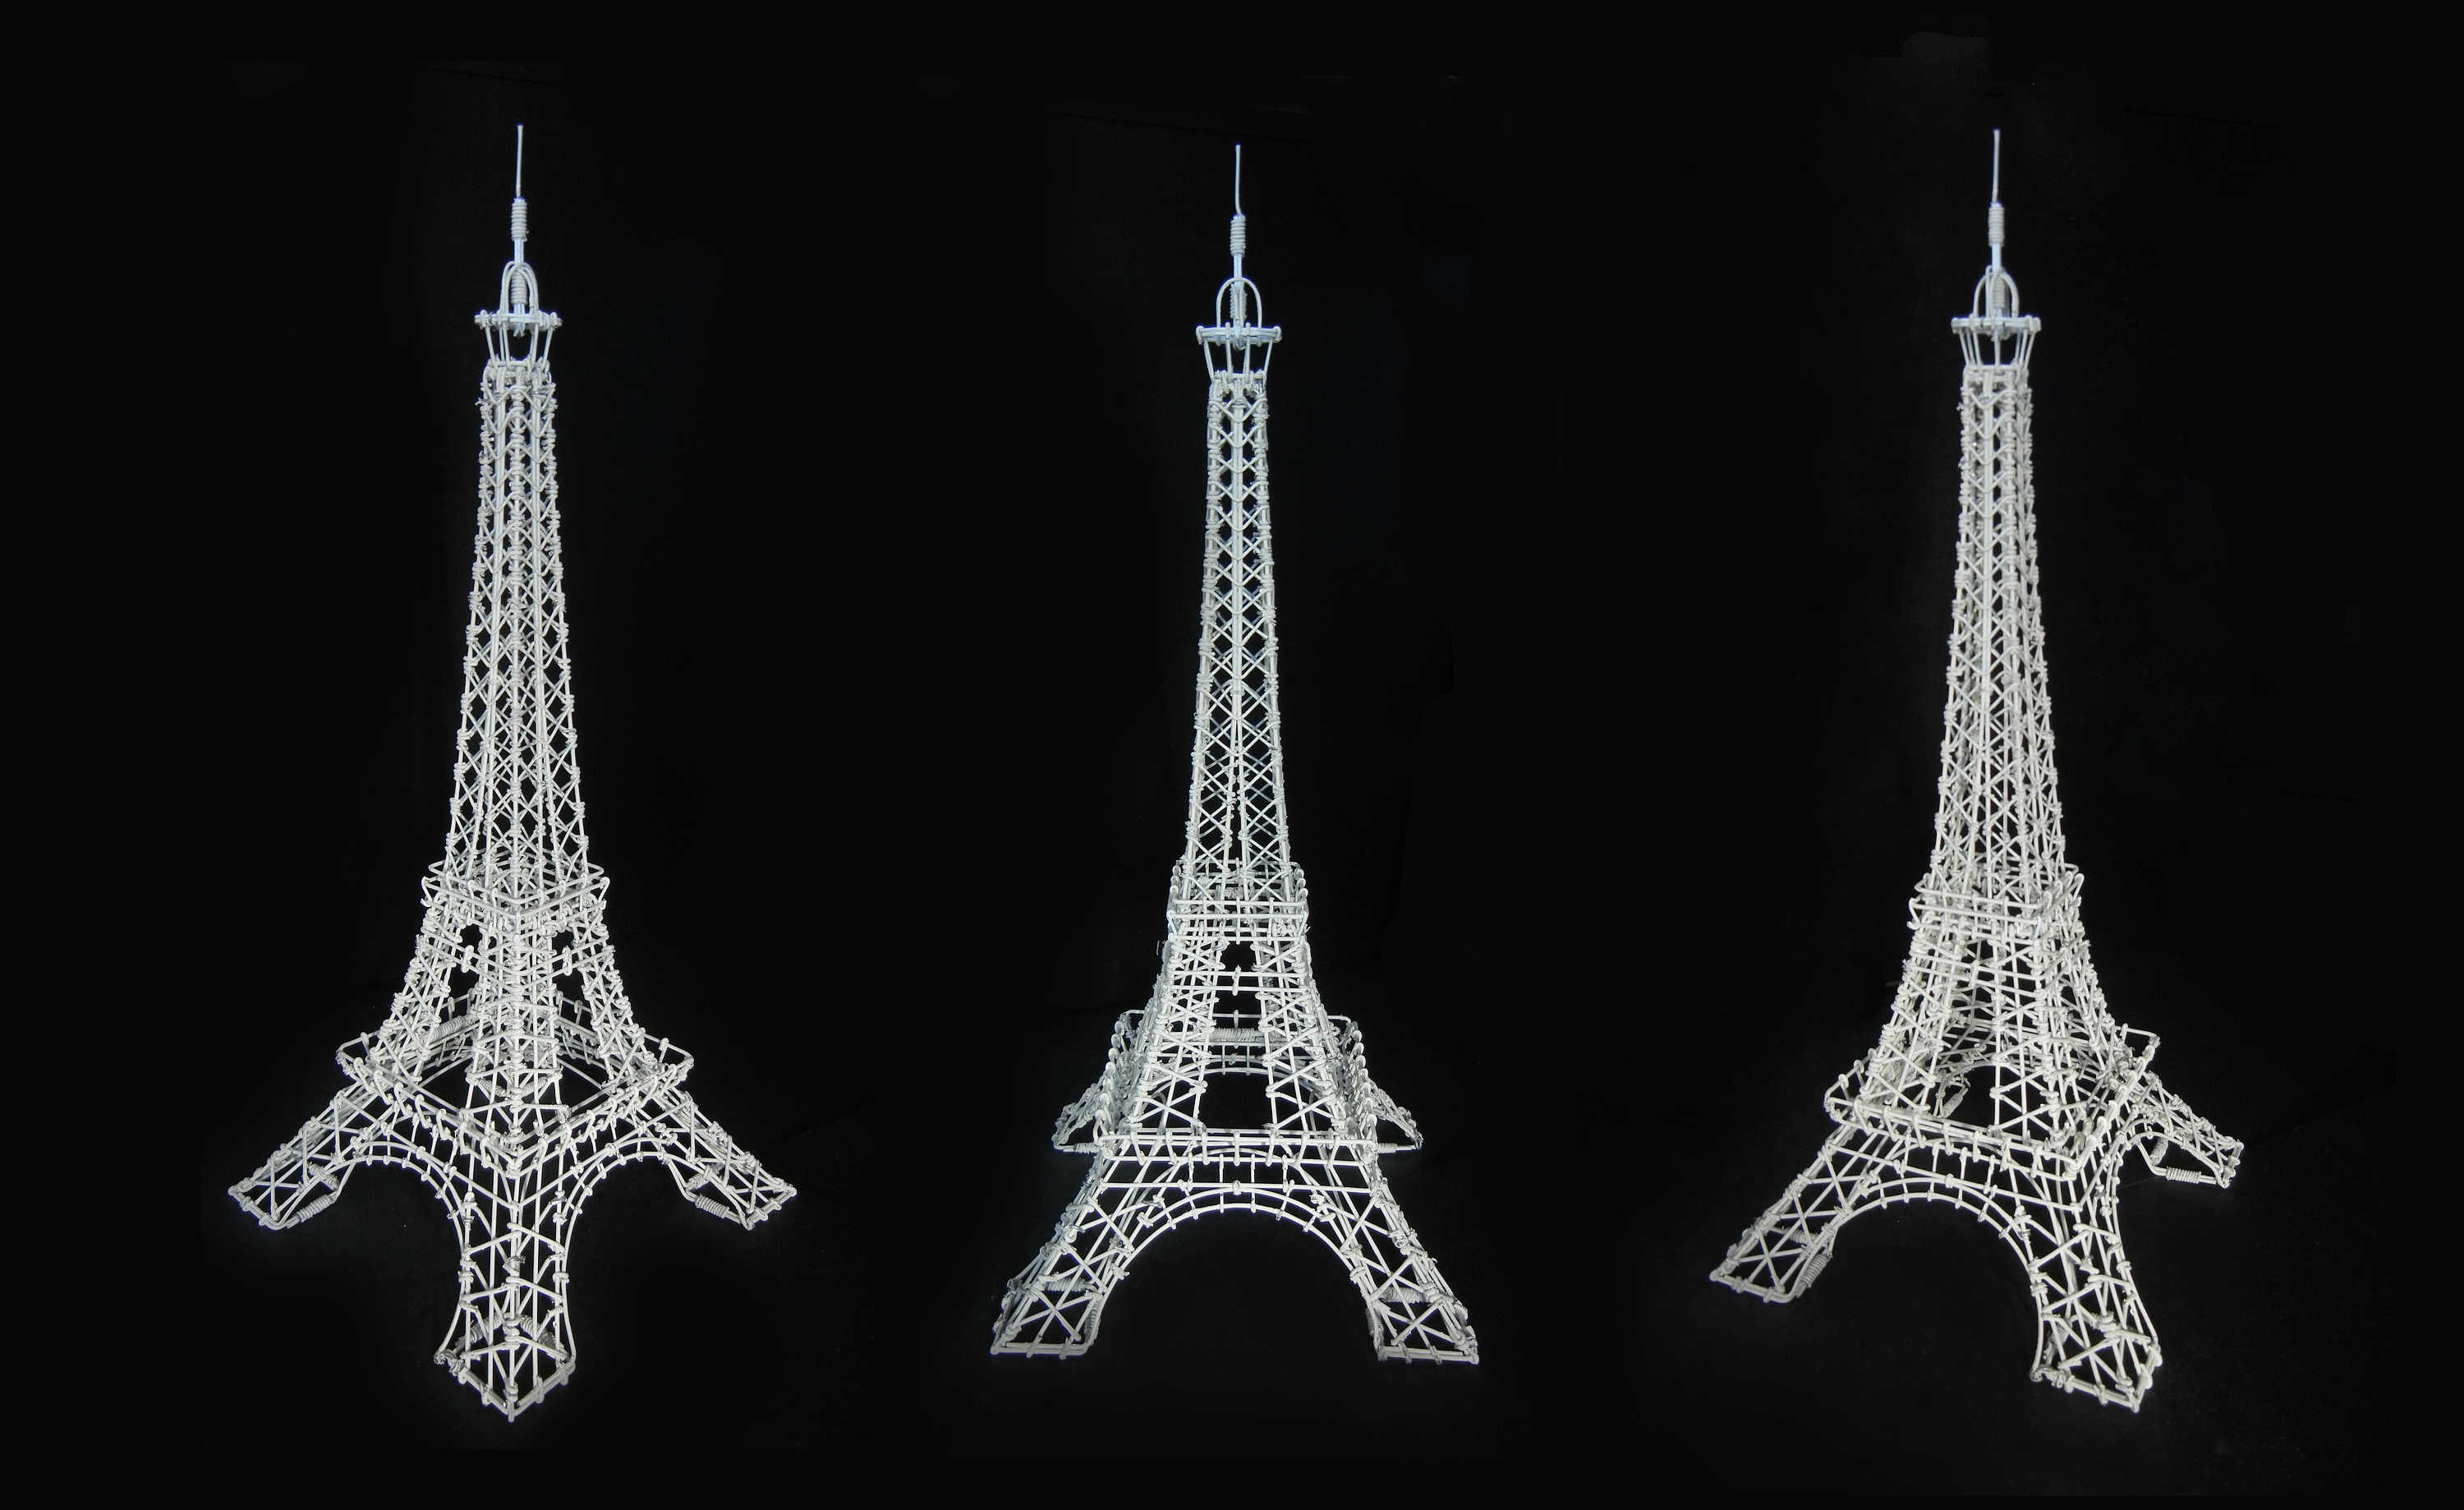 巴黎铁塔模型_浪漫 巴黎 模型 埃菲尔铁塔 装饰礼品 - 阿里巴巴